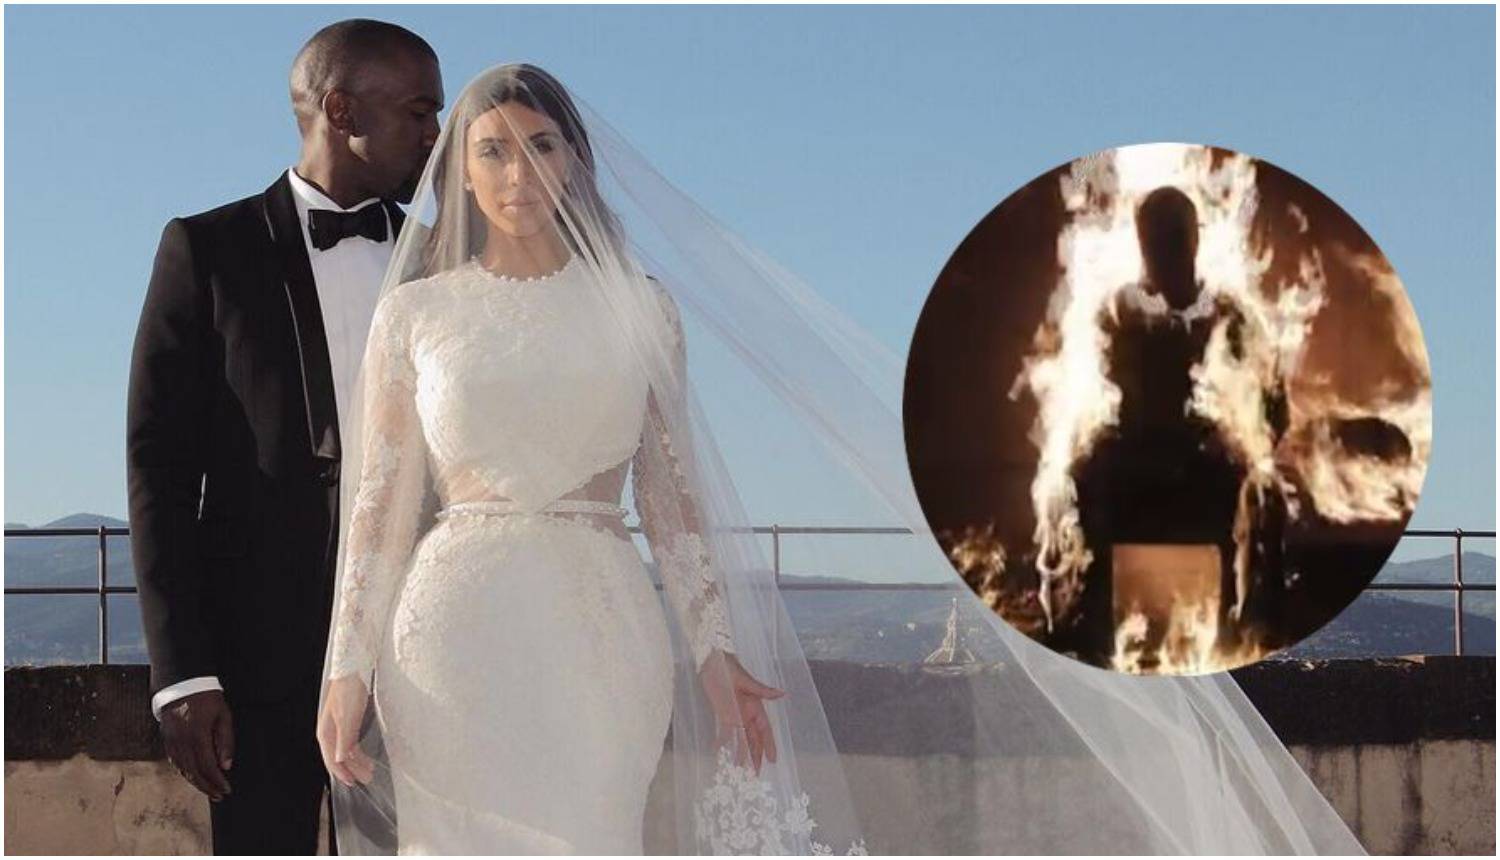 Kanye šokirao sve i zapalio se na pozornici, a nakon 'gašenja' pojavila se Kim u vjenčanici...